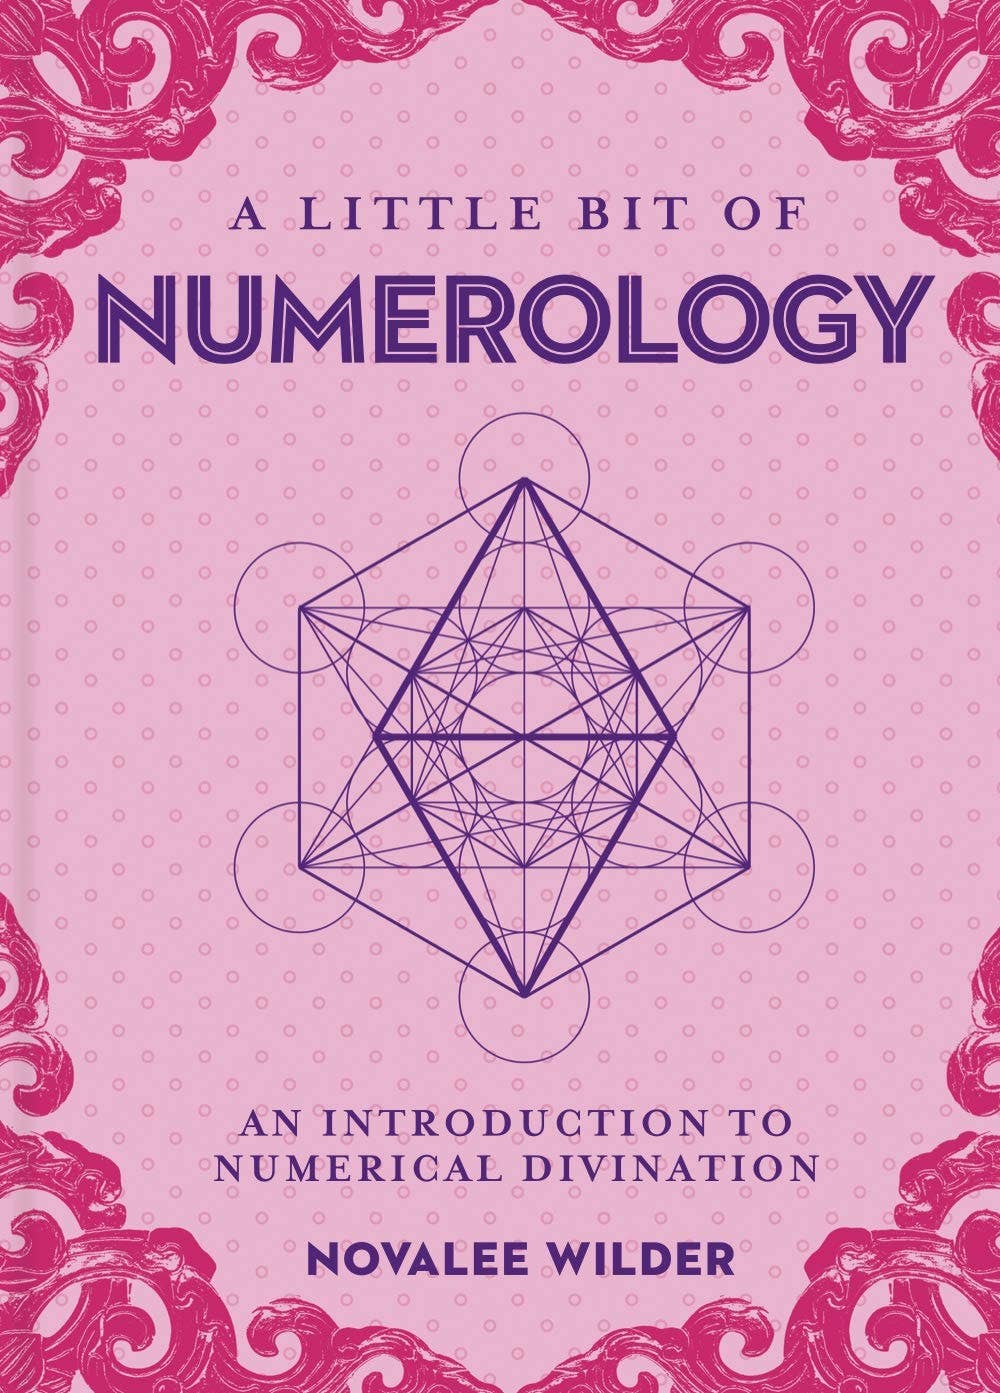 A Little Bit of Numerology by Novalee Wilder